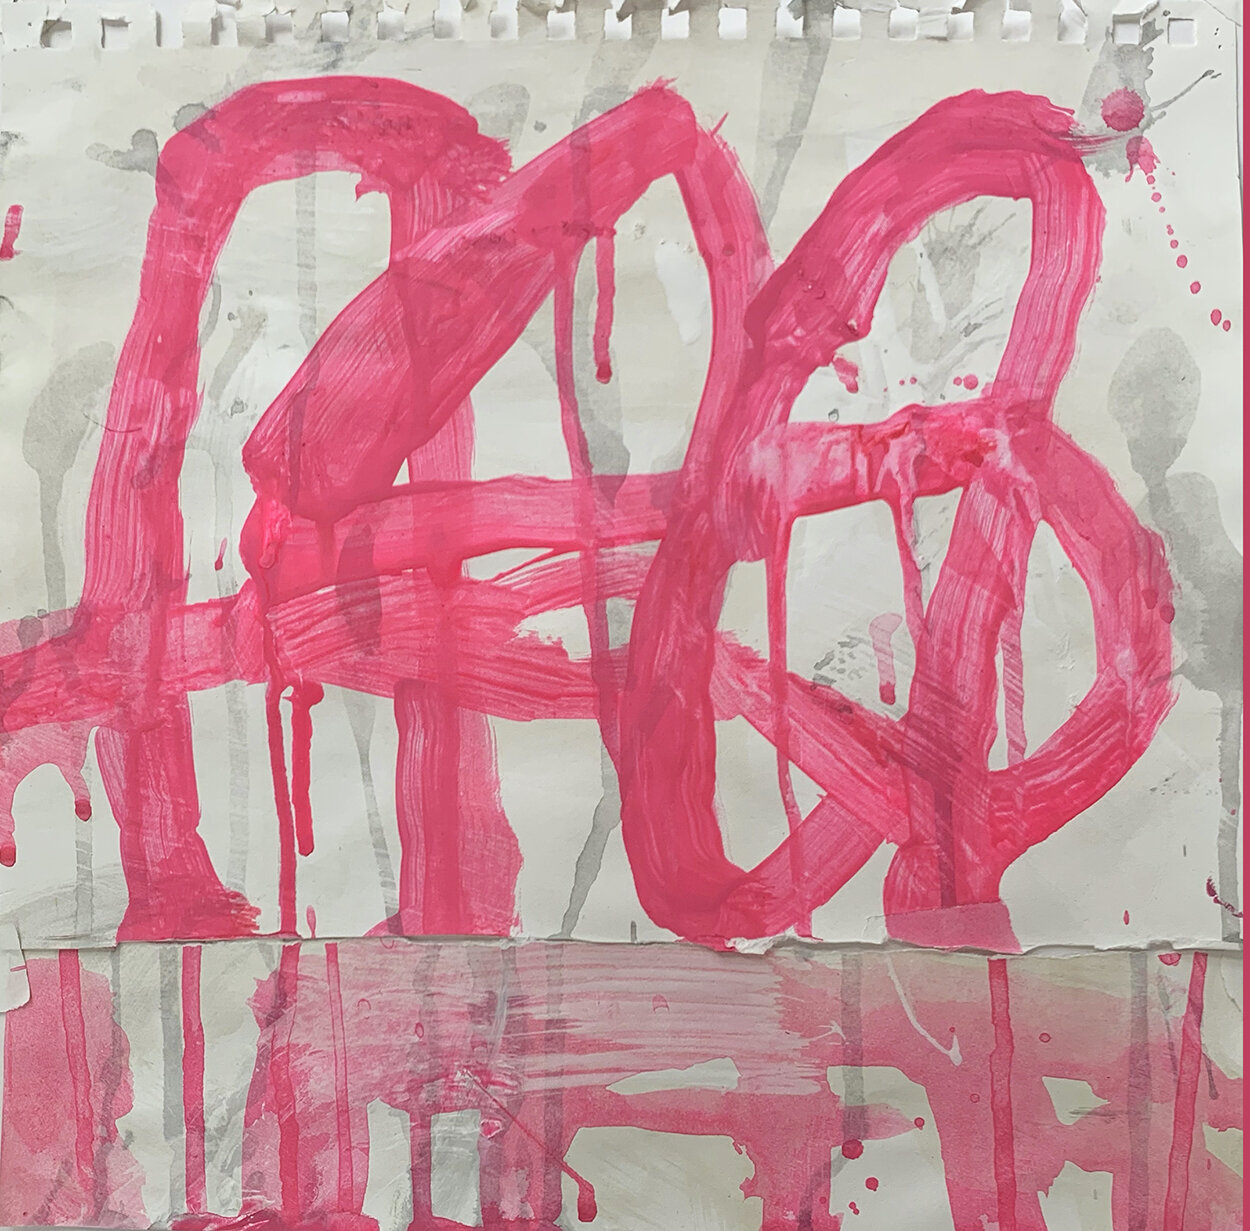    Pink Loops   11 x 11” Ink on Sketchbook paper 